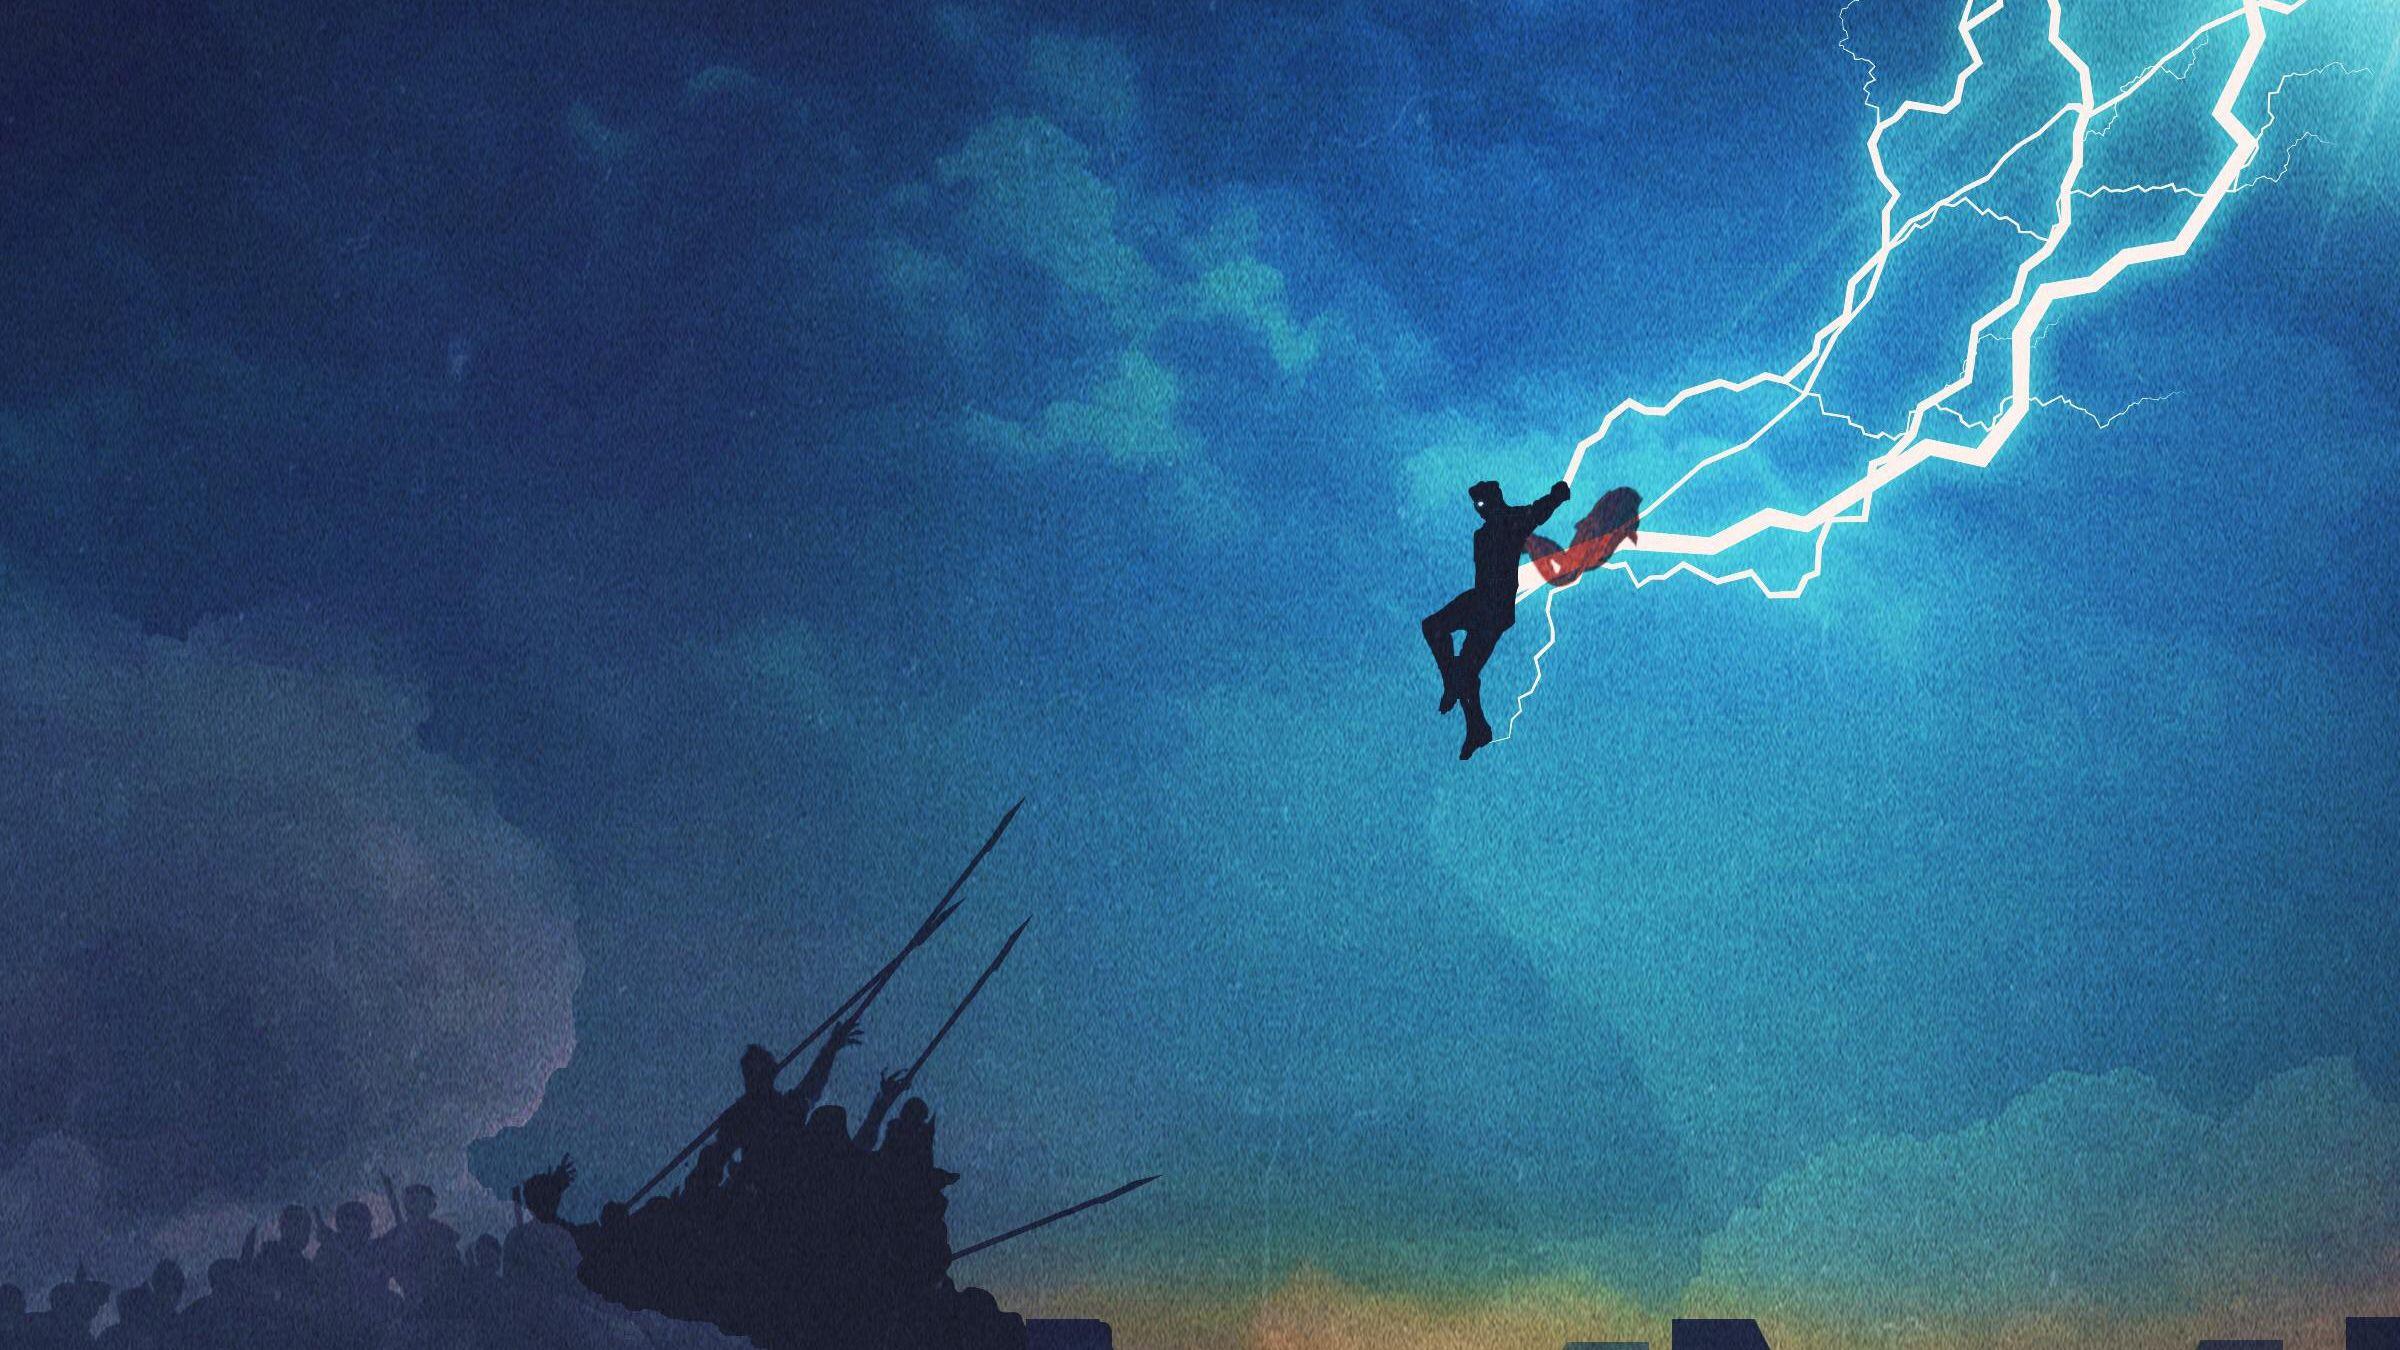  Thor  Lightning 4K  Wallpapers  Top Free Thor  Lightning 4K  